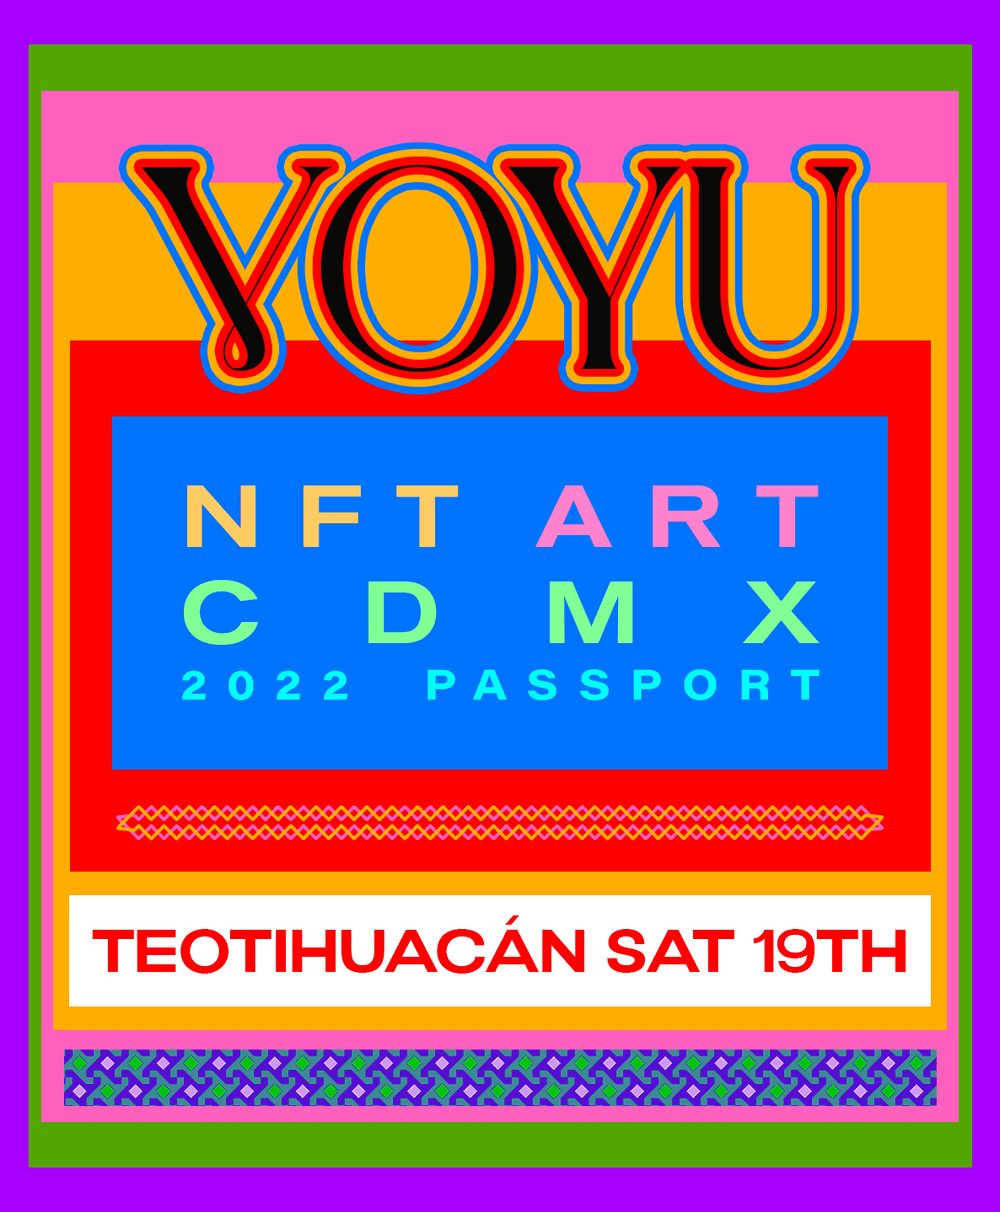 VOYU Access Pass Teotihuacán Nov 19